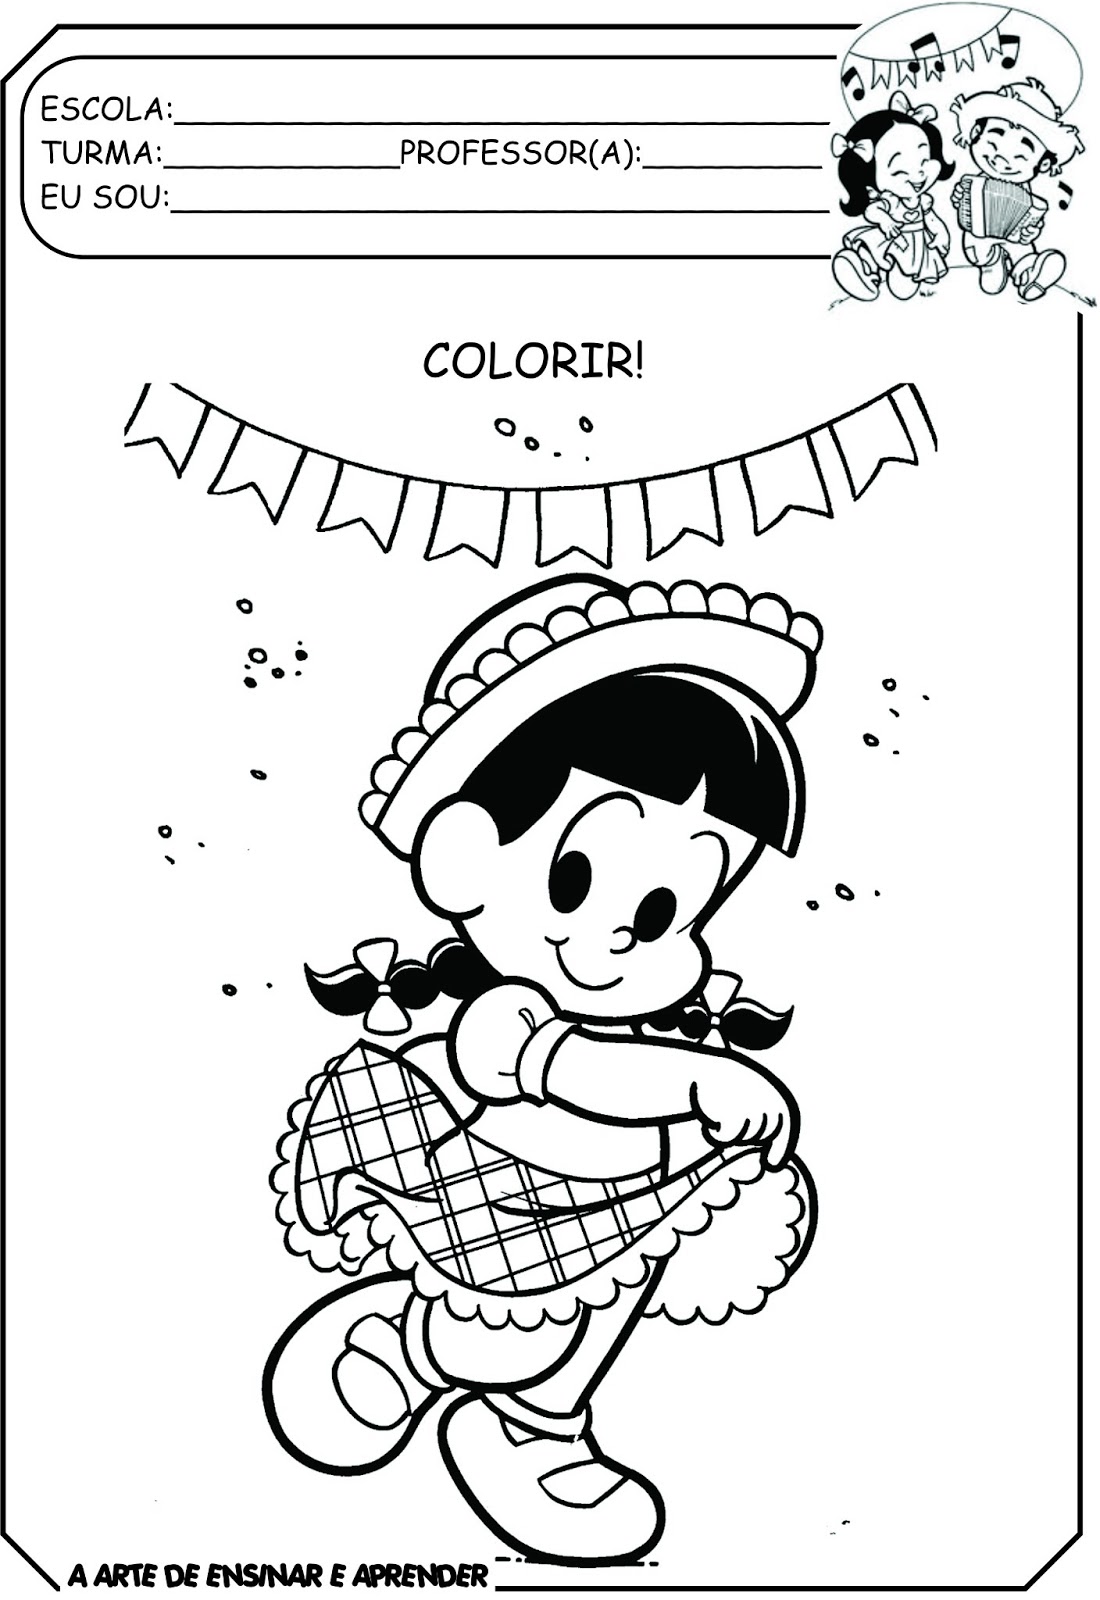 Vamos colorir bem bonito - Ler e Aprender  Atividades de colorir,  Atividades para maternal, Colorir